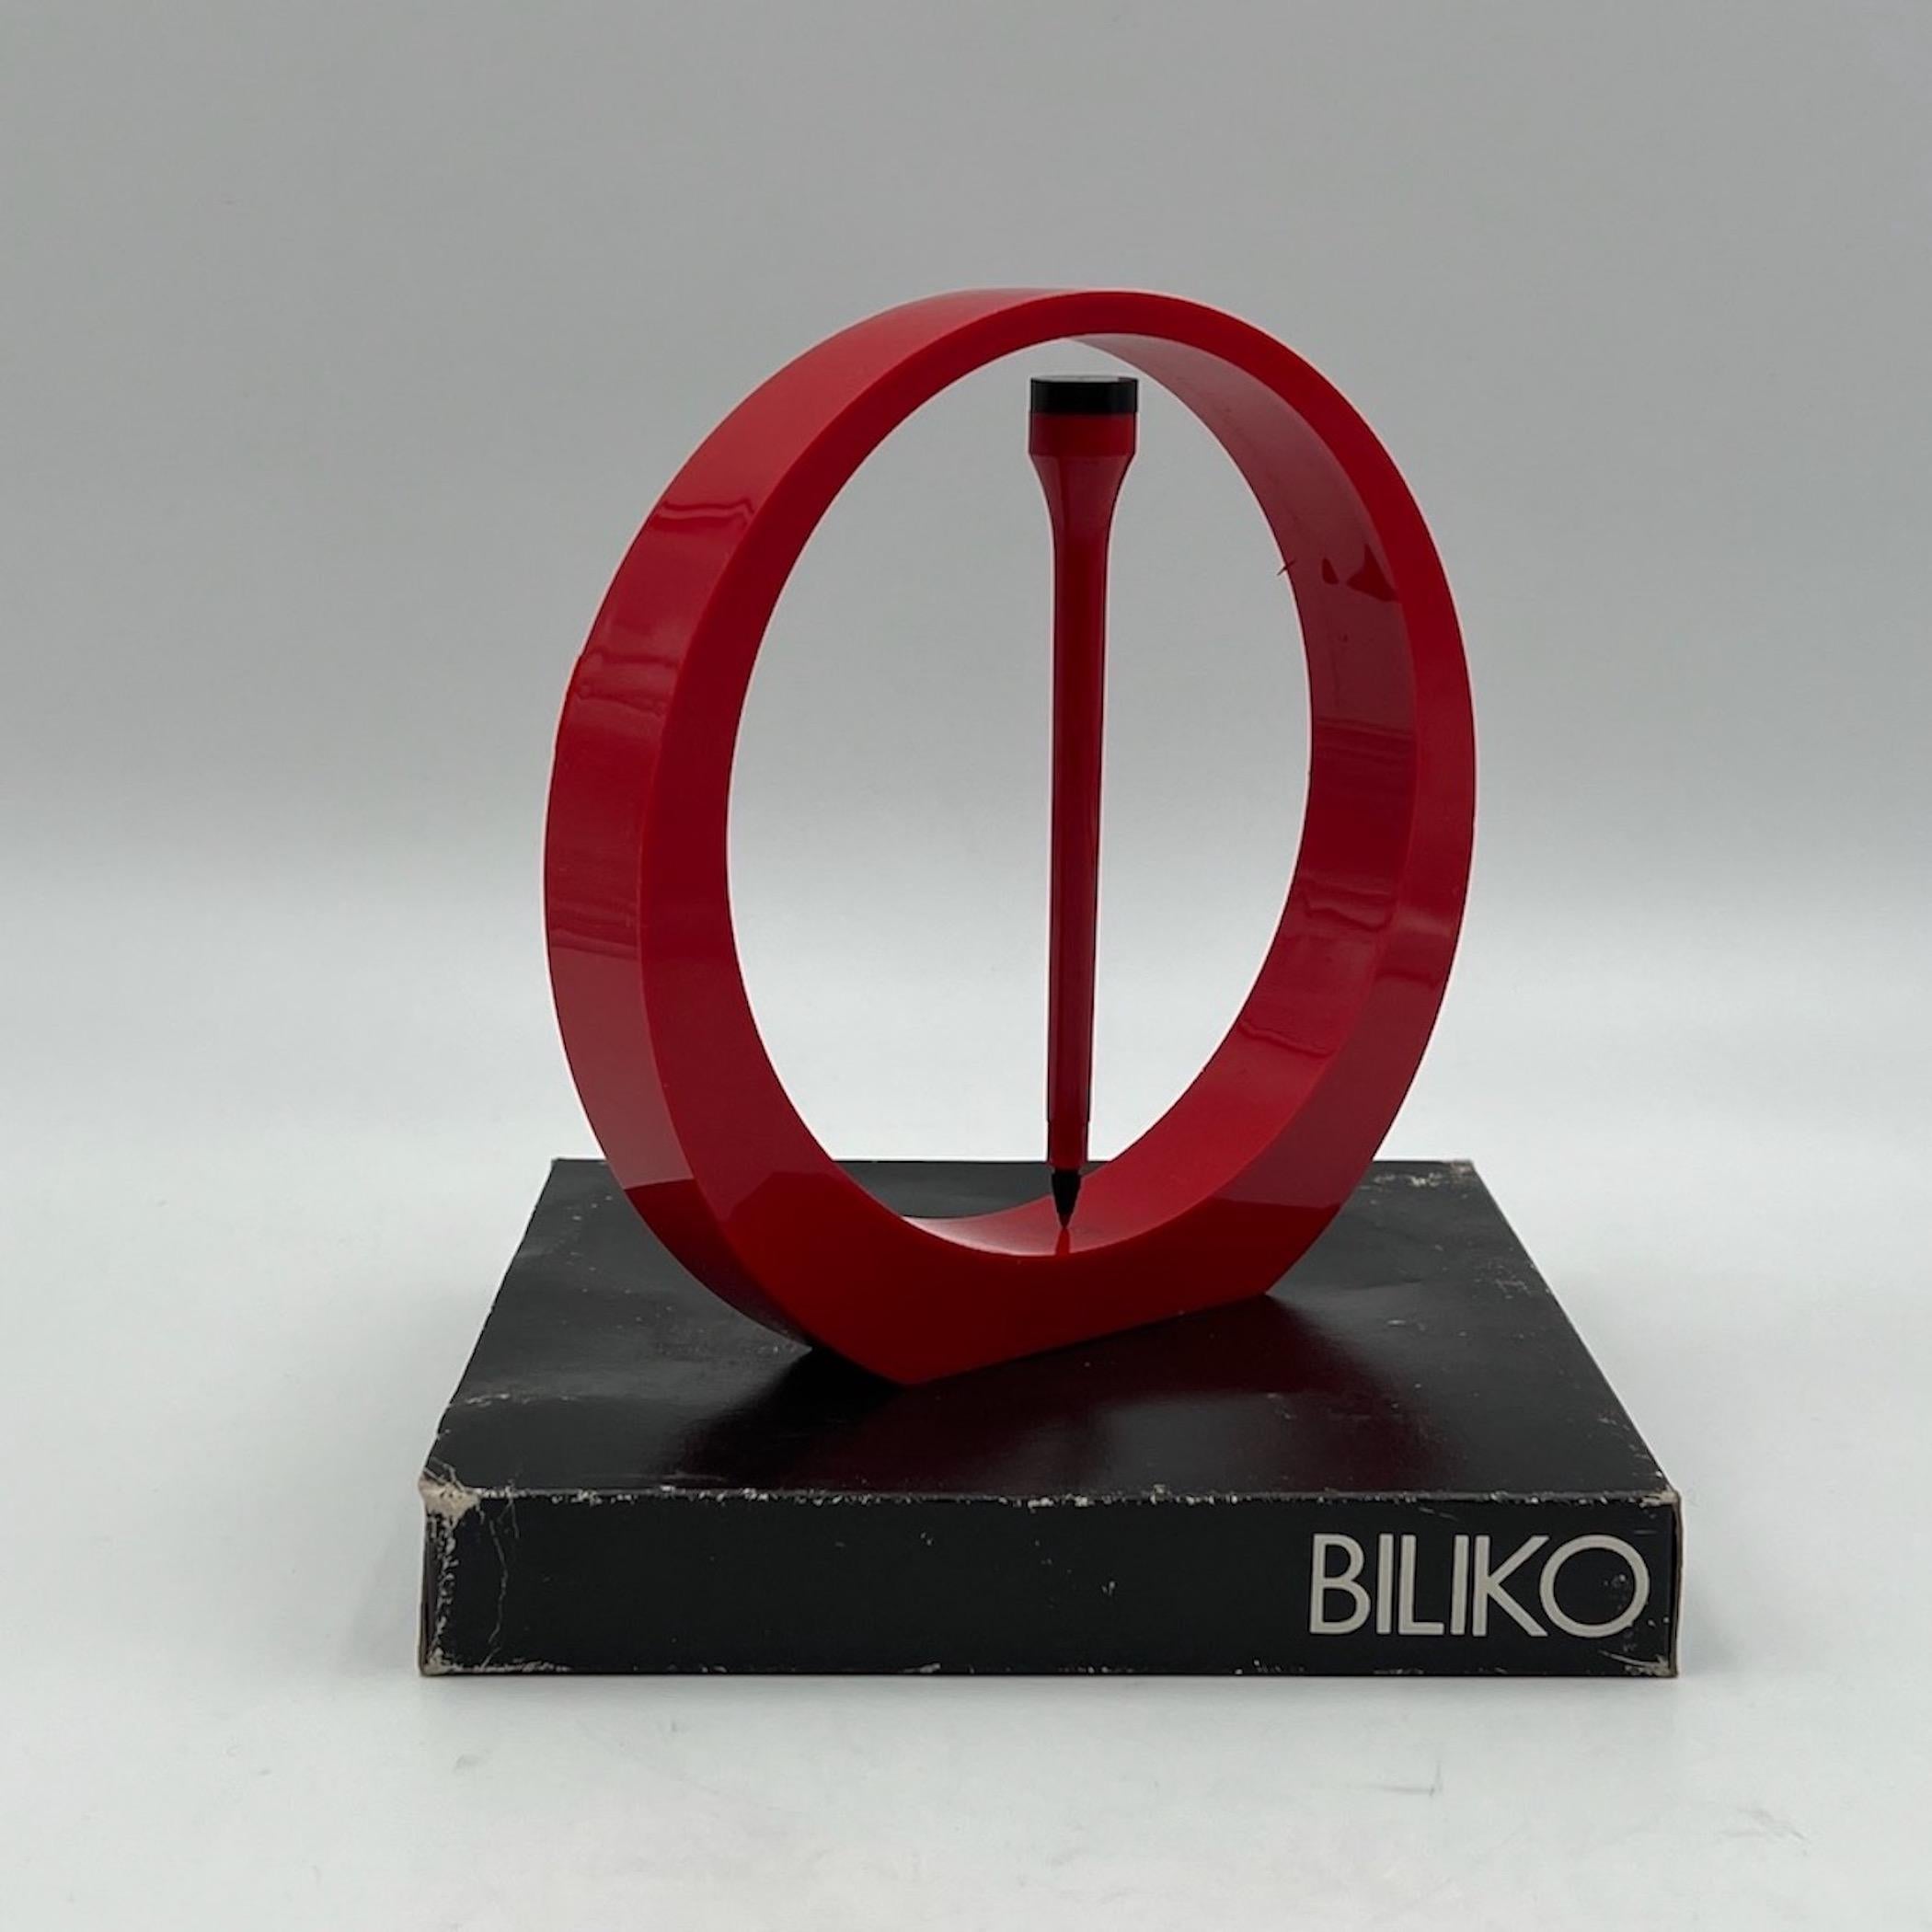 Rare set d'écriture 'Biliko', avec support rond et stylo assorti, fabriqué en Italie dans les années 70.

Biliko (en fait 